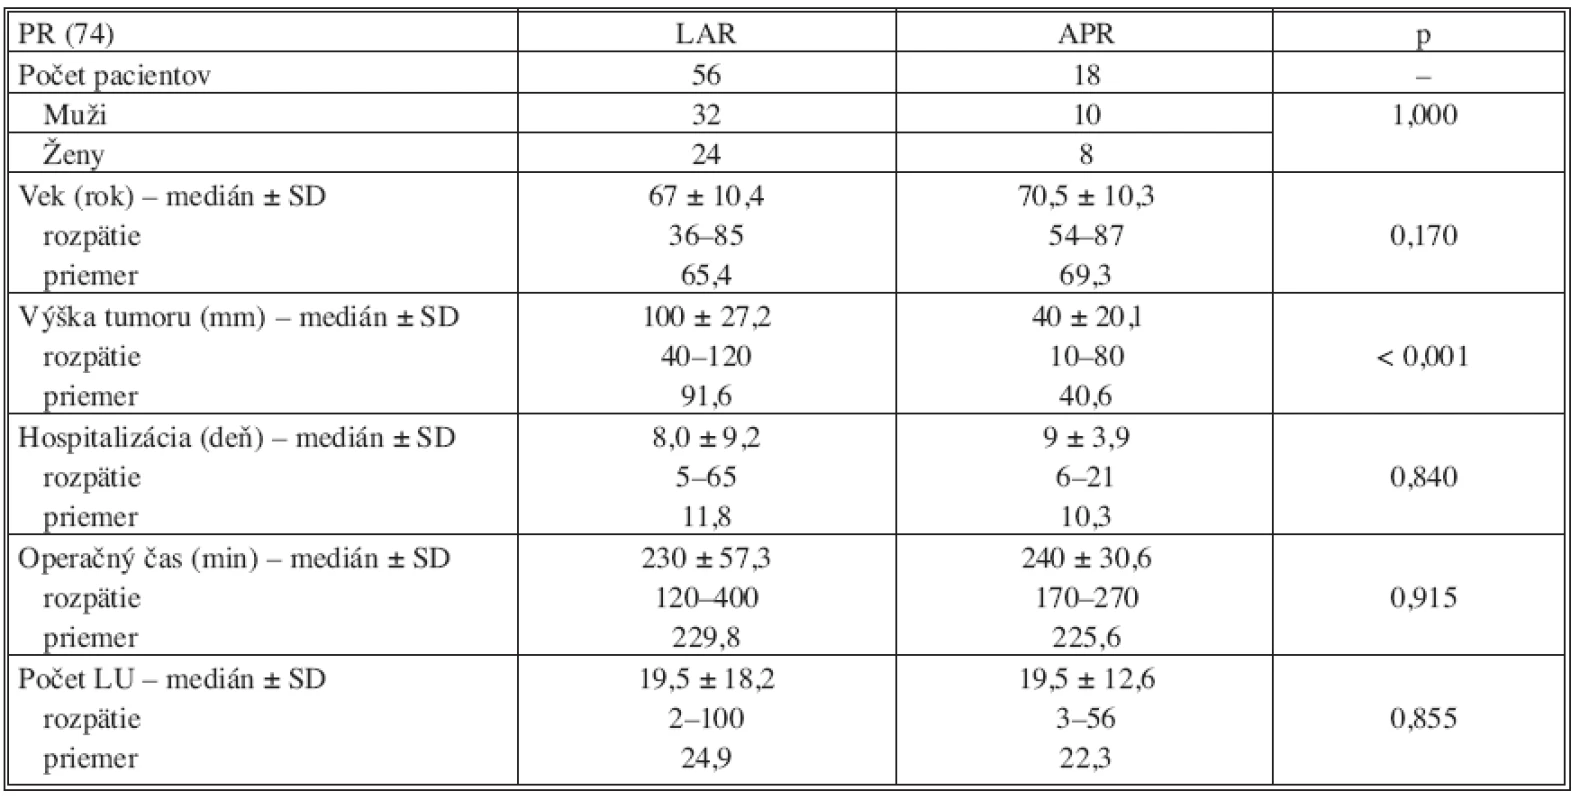 Vyhodnotenie výsledkov v skupine primárne operovaných pacientov (PR)
Tab. 4. Results evaluation in the group of primary operated patients (PR)